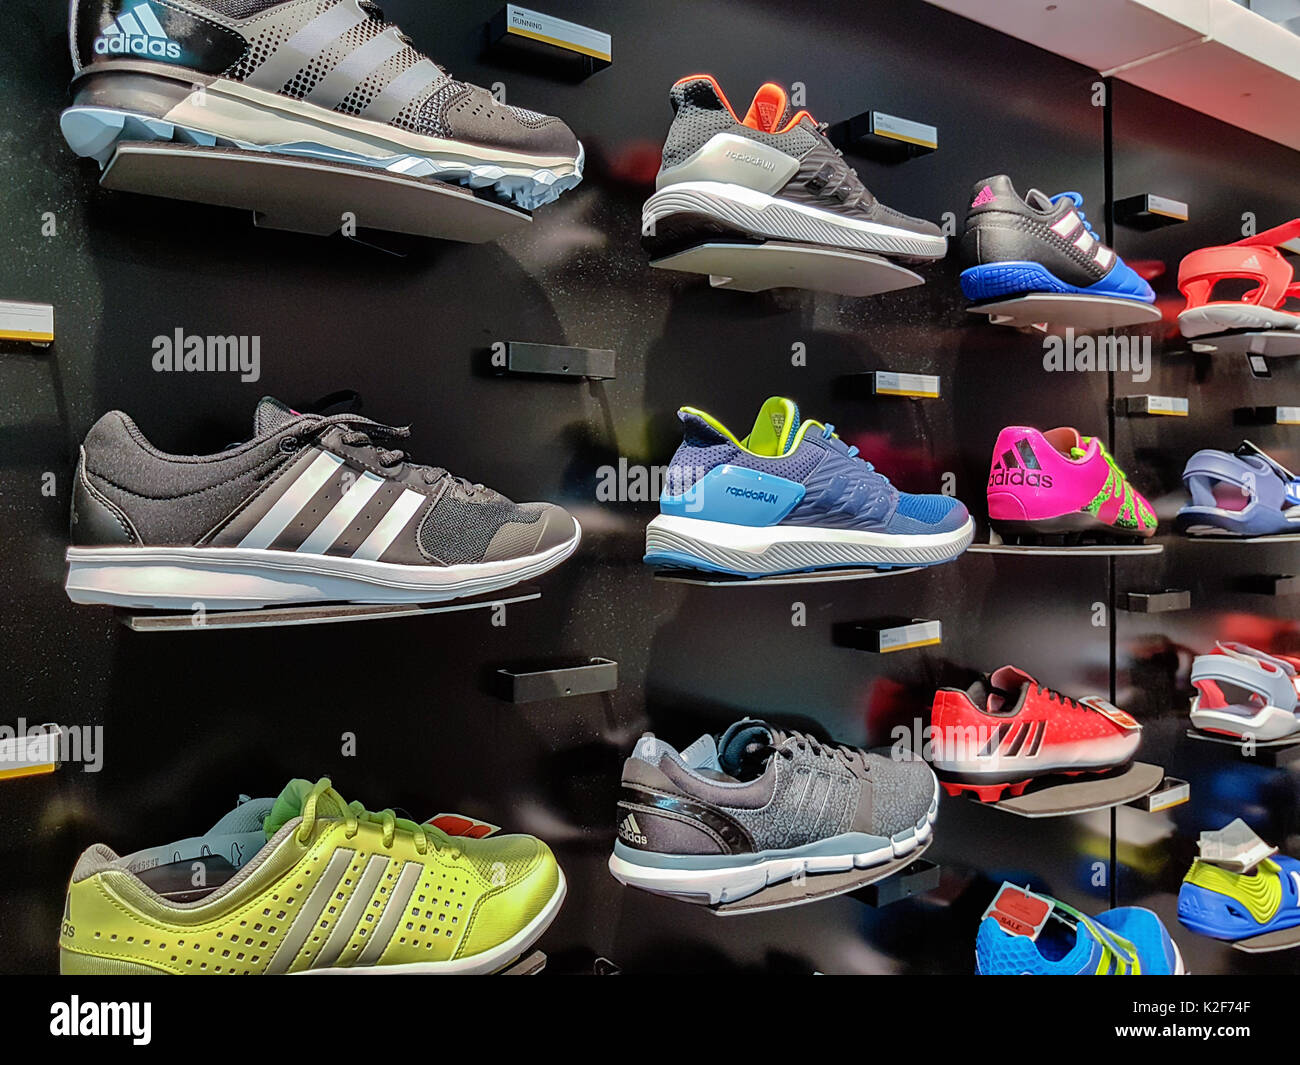 Adidas shop immagini e fotografie stock ad alta risoluzione - Alamy